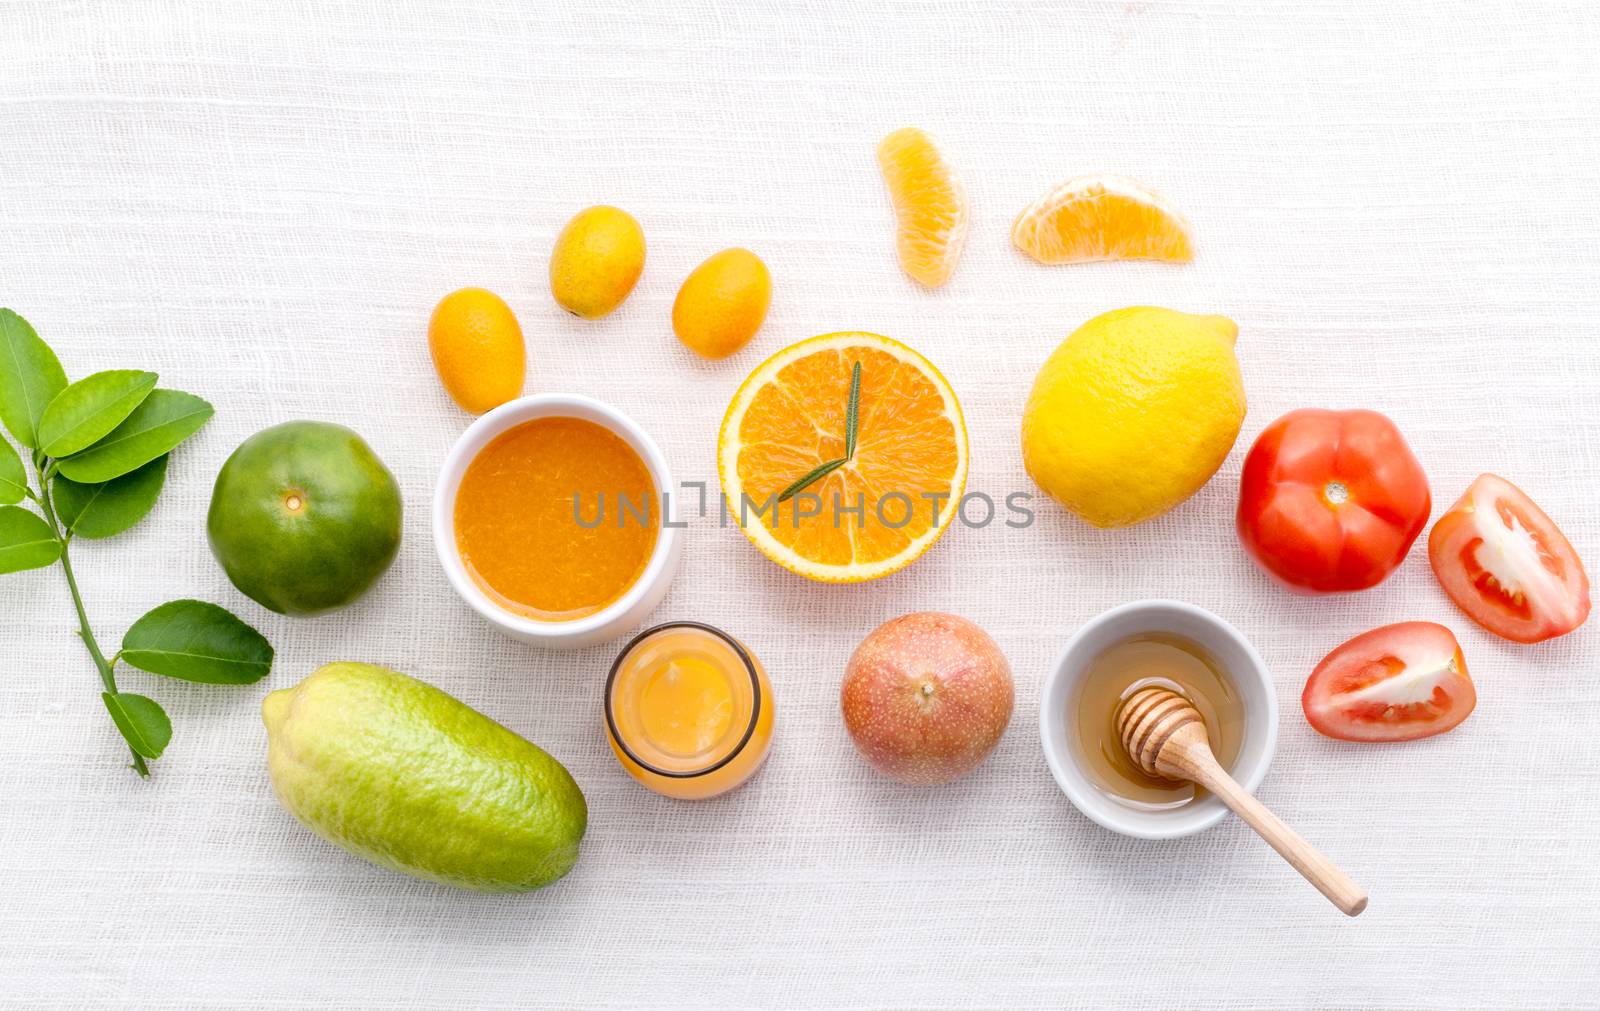 Breakfast with orange juice, oranges, oranges slice, passion fru by kerdkanno